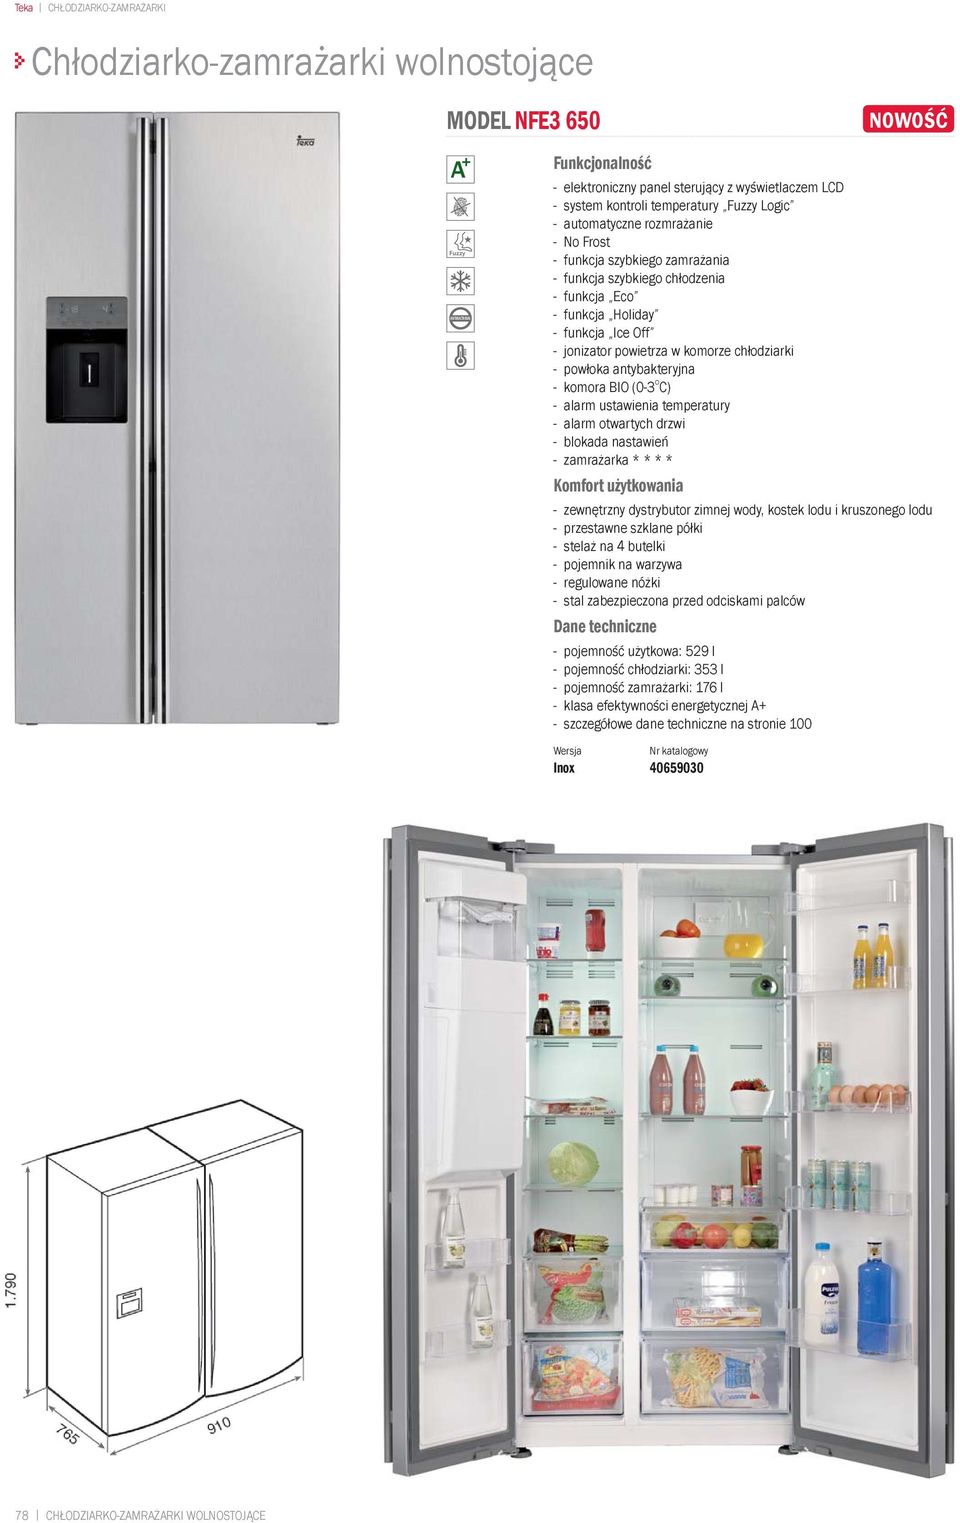 chłodziarki - alarm ustawienia temperatury - alarm otwartych drzwi - blokada nastawień - zewnętrzny dystrybutor zimnej wody, kostek lodu i kruszonego lodu - stelaż na 4 butelki - pojemnik